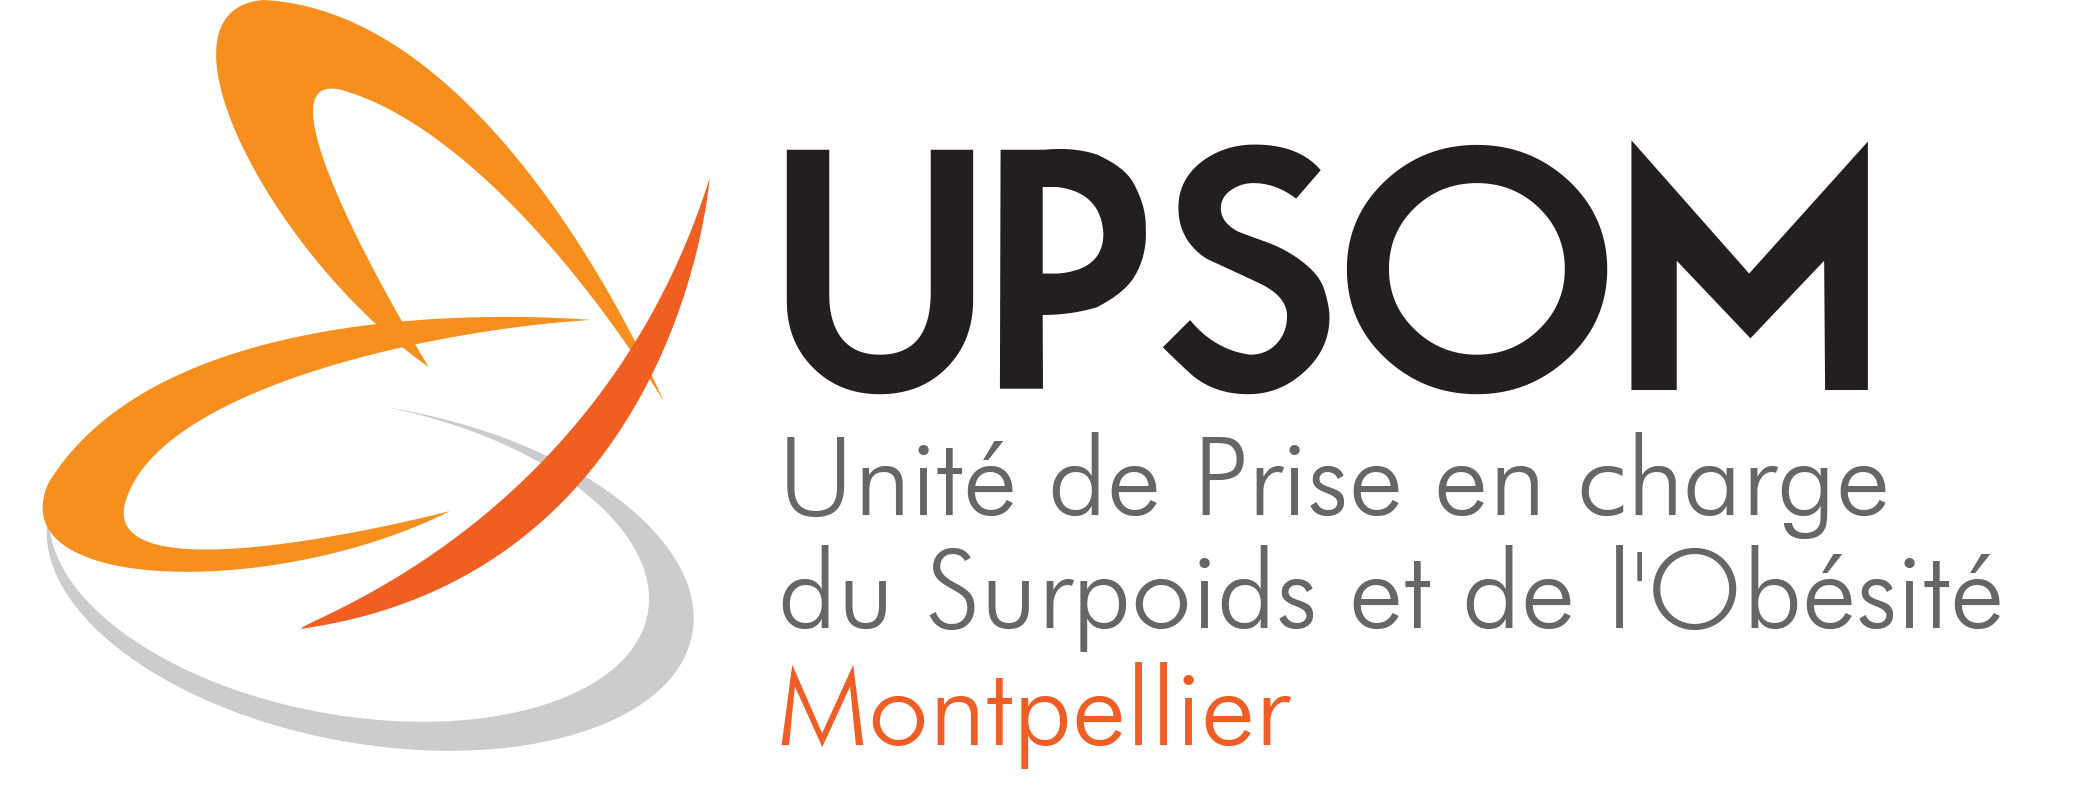 UPSOM - Sleeve gastrectomie Centre de Chirurgie Viscérale et de l'Obésité  Montpellier